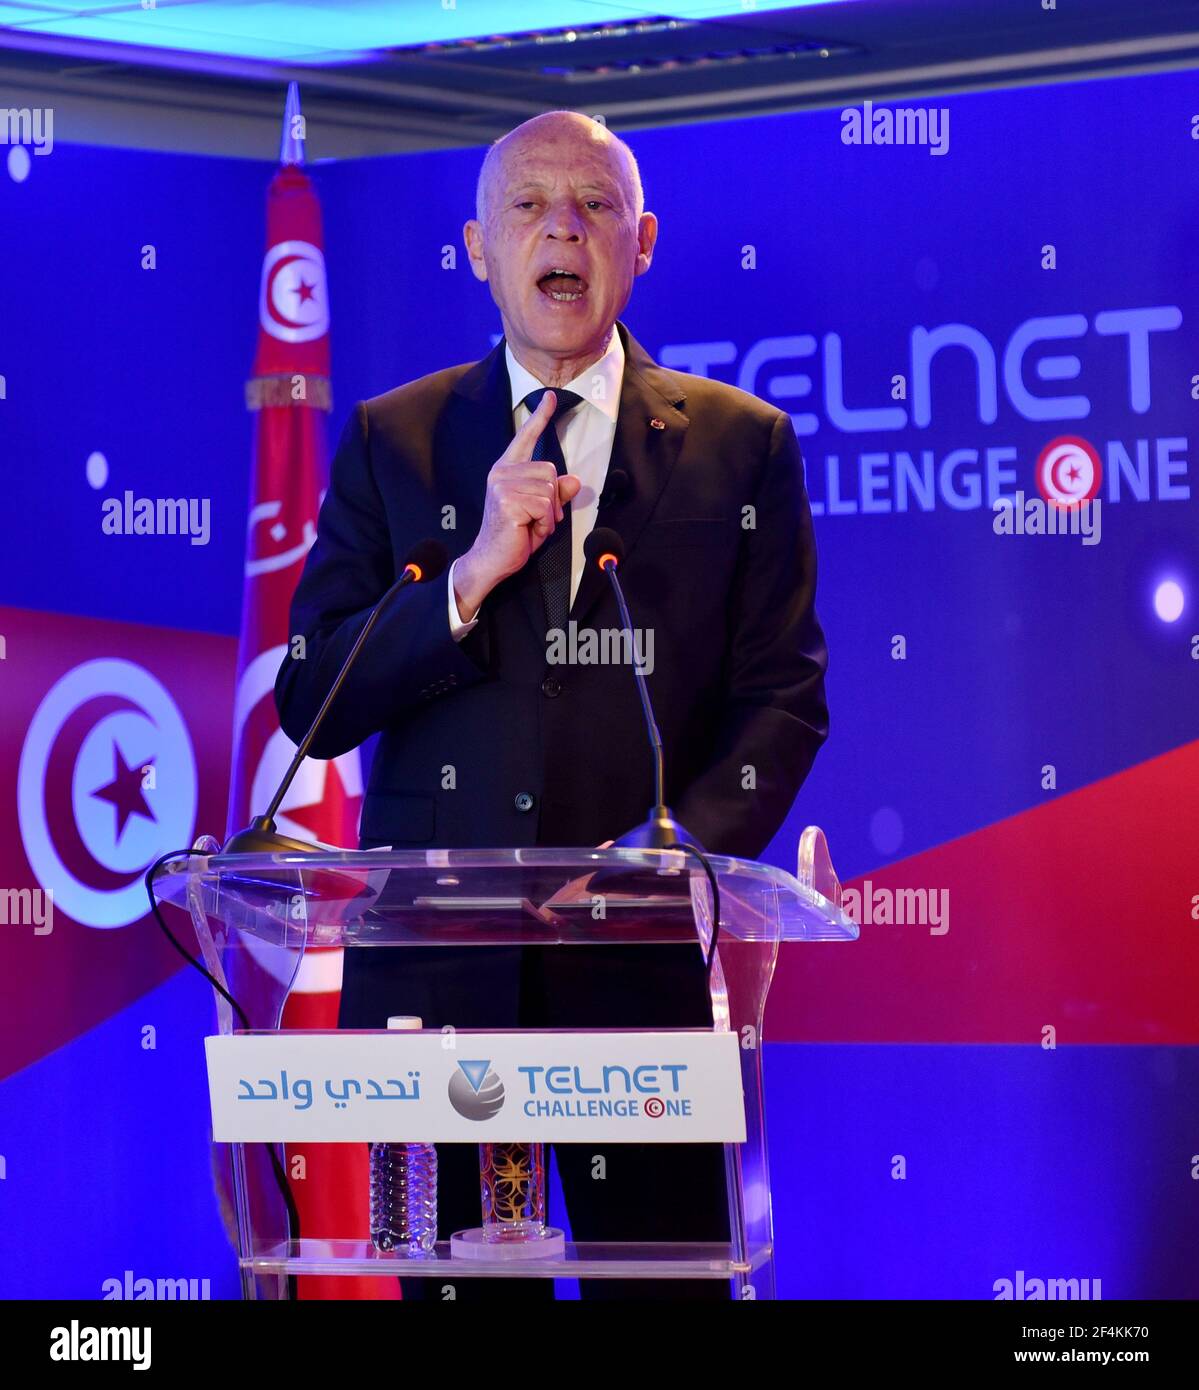 Launch Tunisie